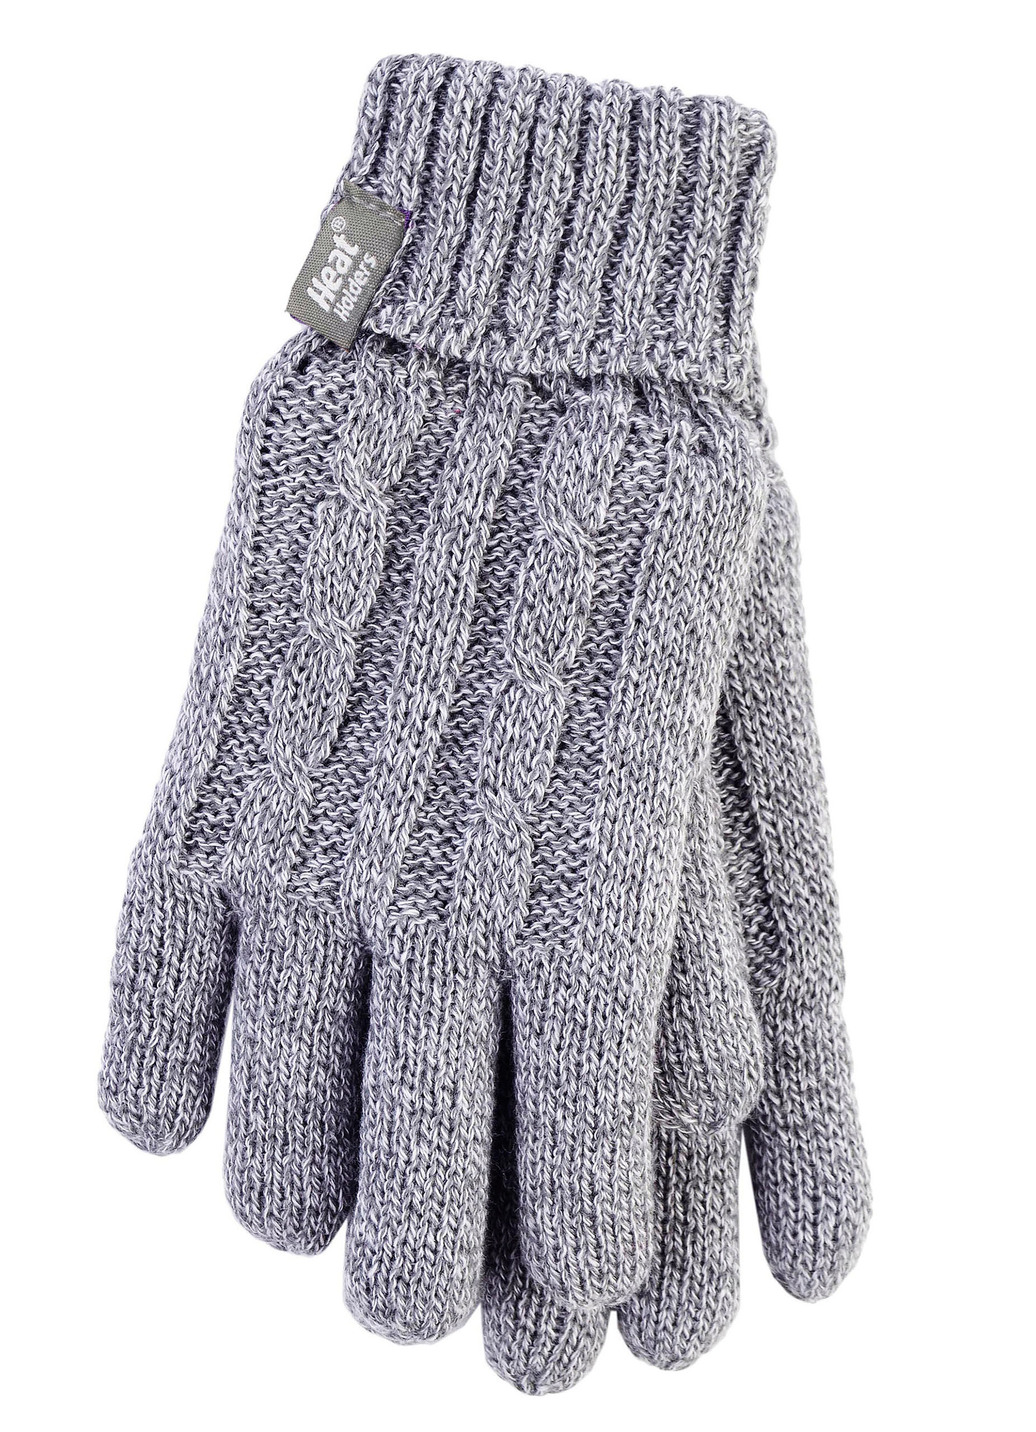 Thermo-Handschuhe von Heat Holders® für mehr Komfort im Winter, Grau, Größe 1 von BADER